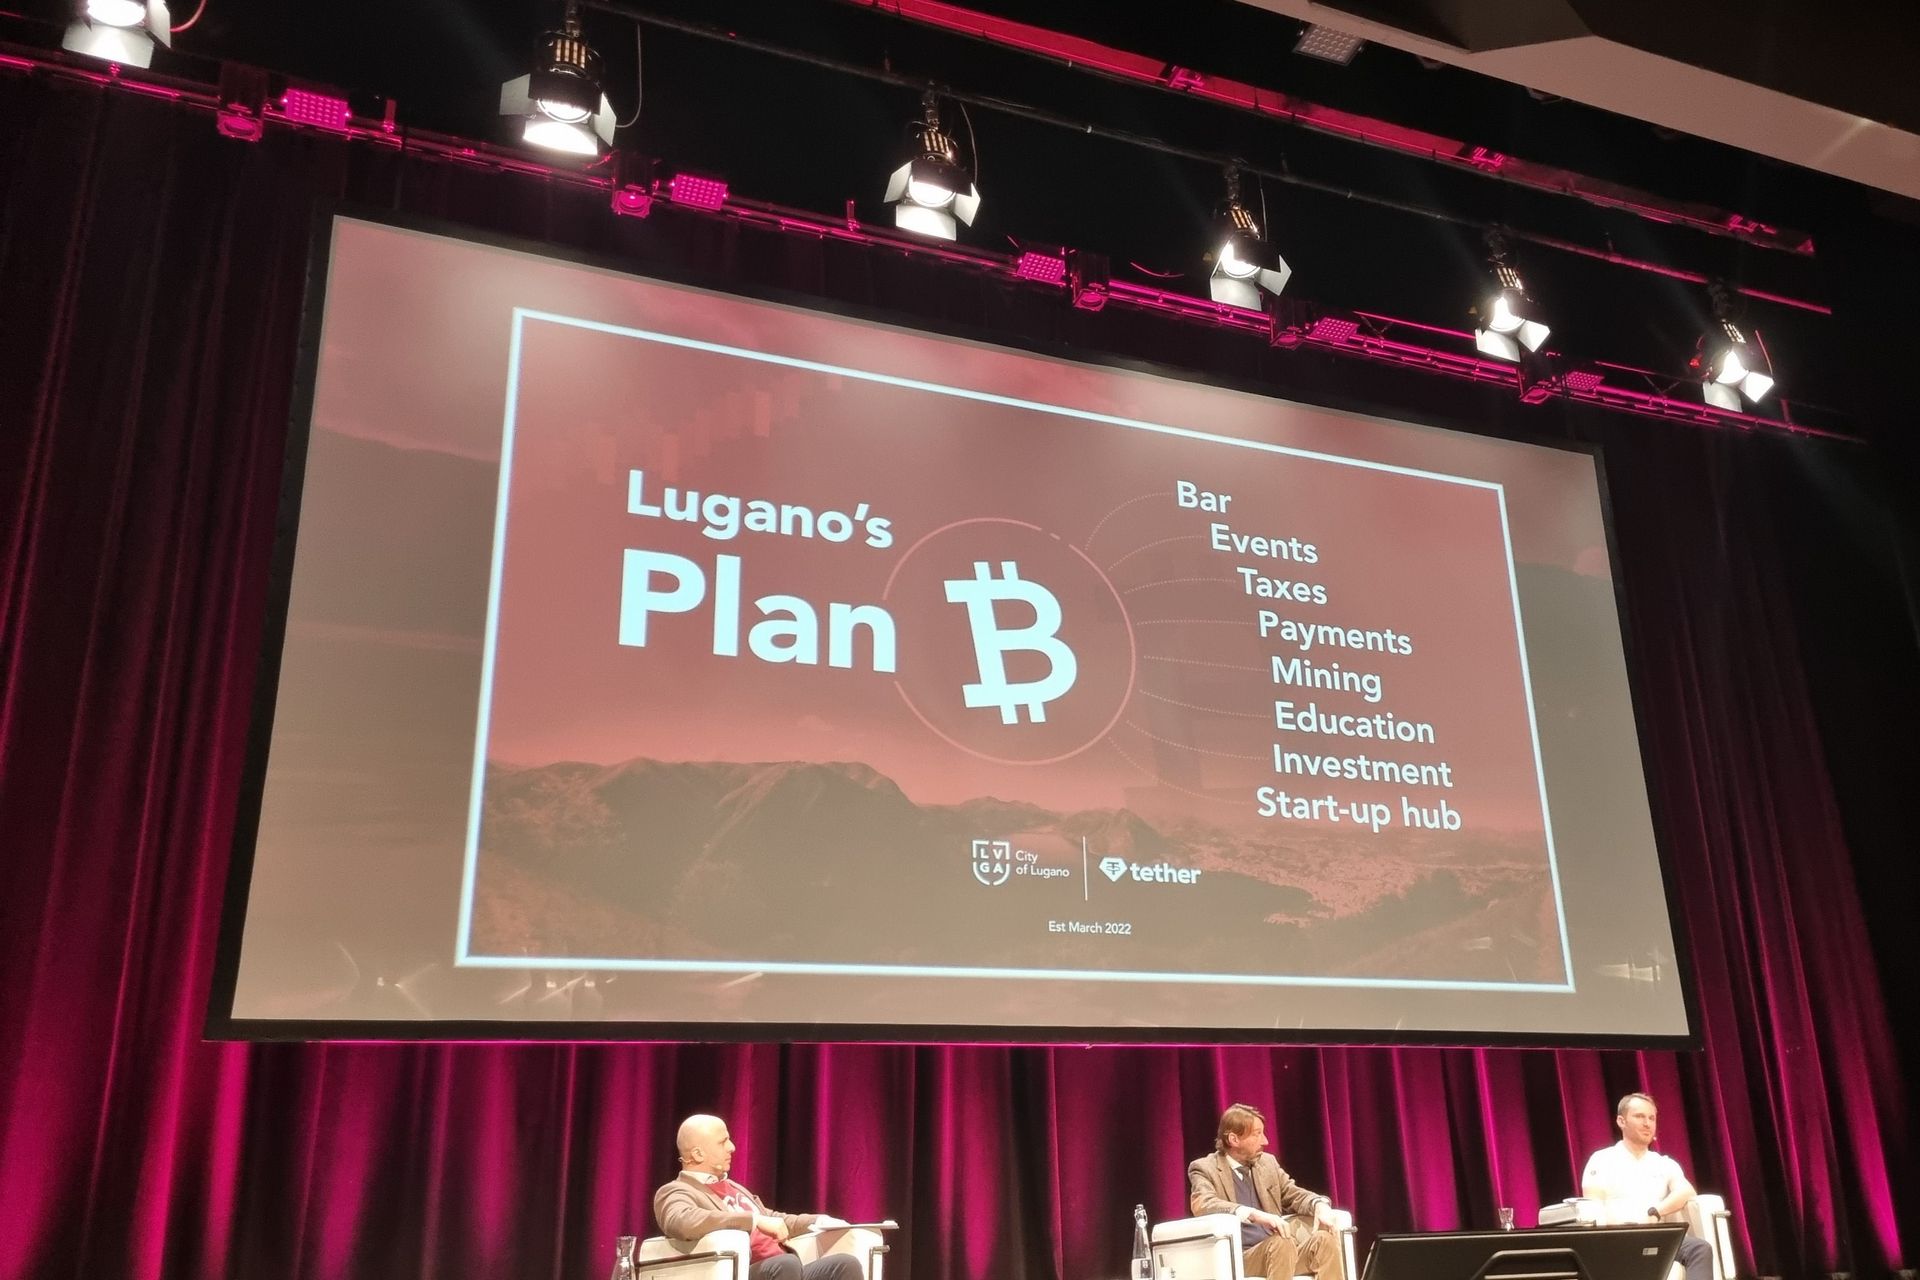 3. märtsil 2022 kongressikeskuses esitlus Lugano linna ja Tether Operations Limitedi koostööst: "Plan B" kavatseb luua Euroopa tippkeskuse krüptovaluutade ja Blockchaini tehnoloogia kasutuselevõtuks.